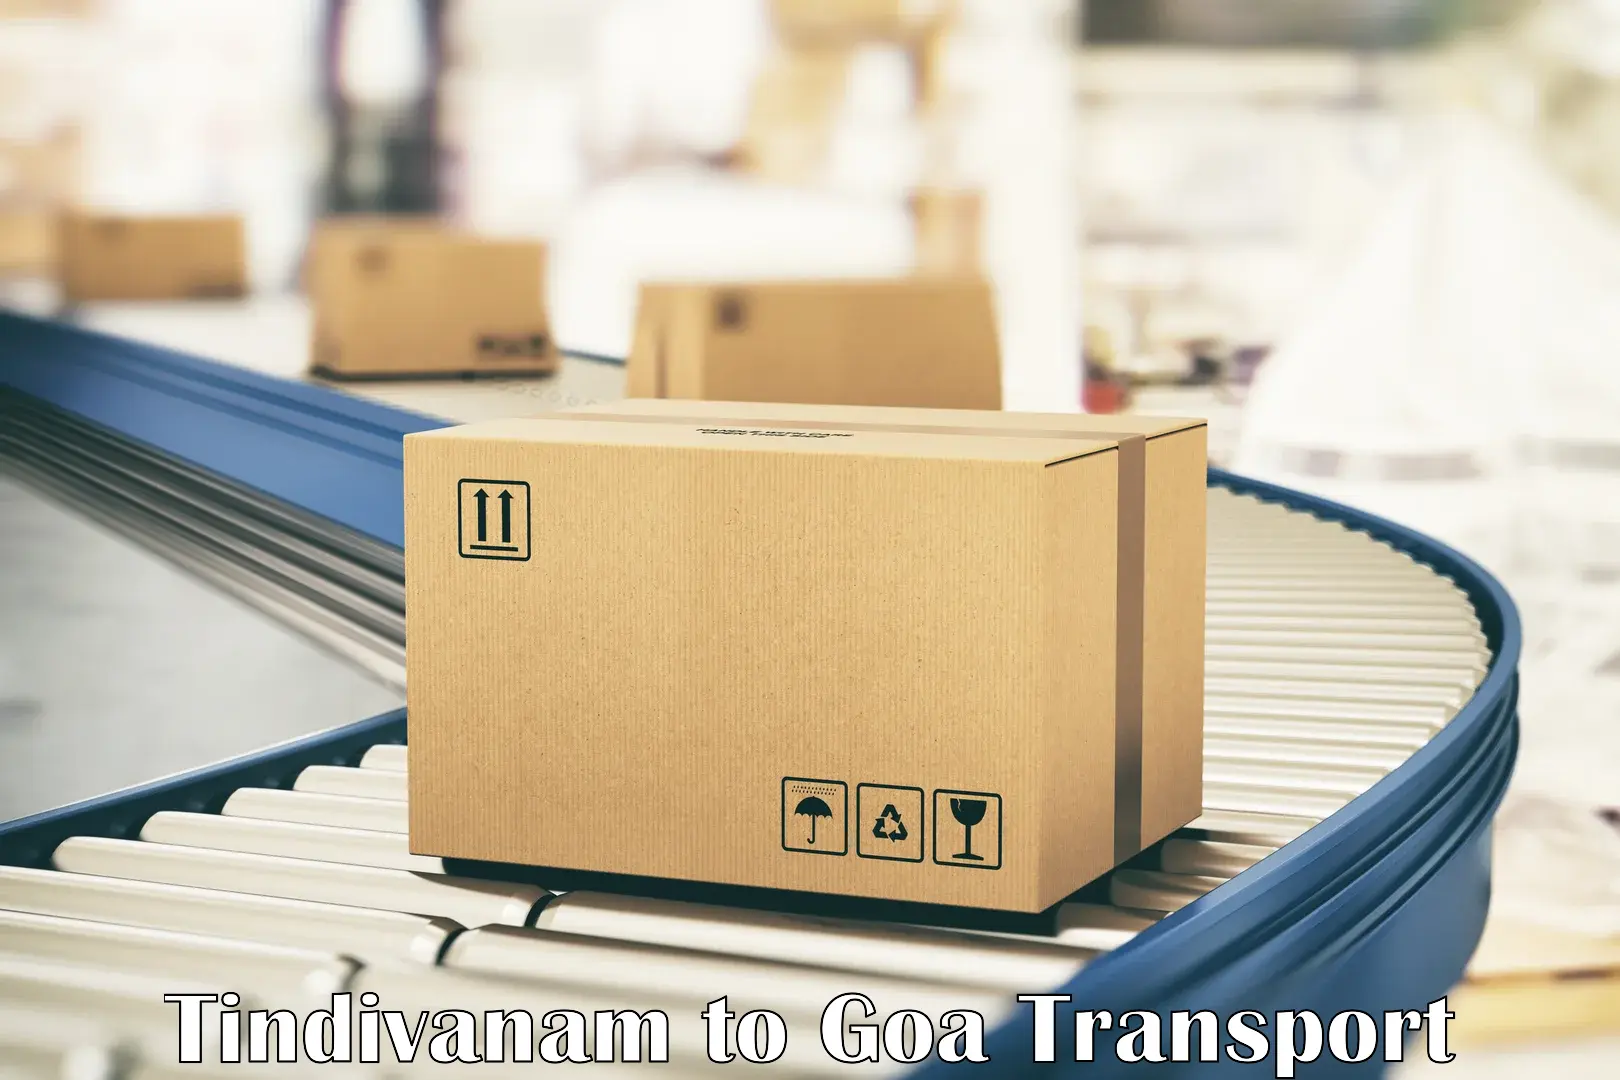 Transportation services Tindivanam to Mormugao Port